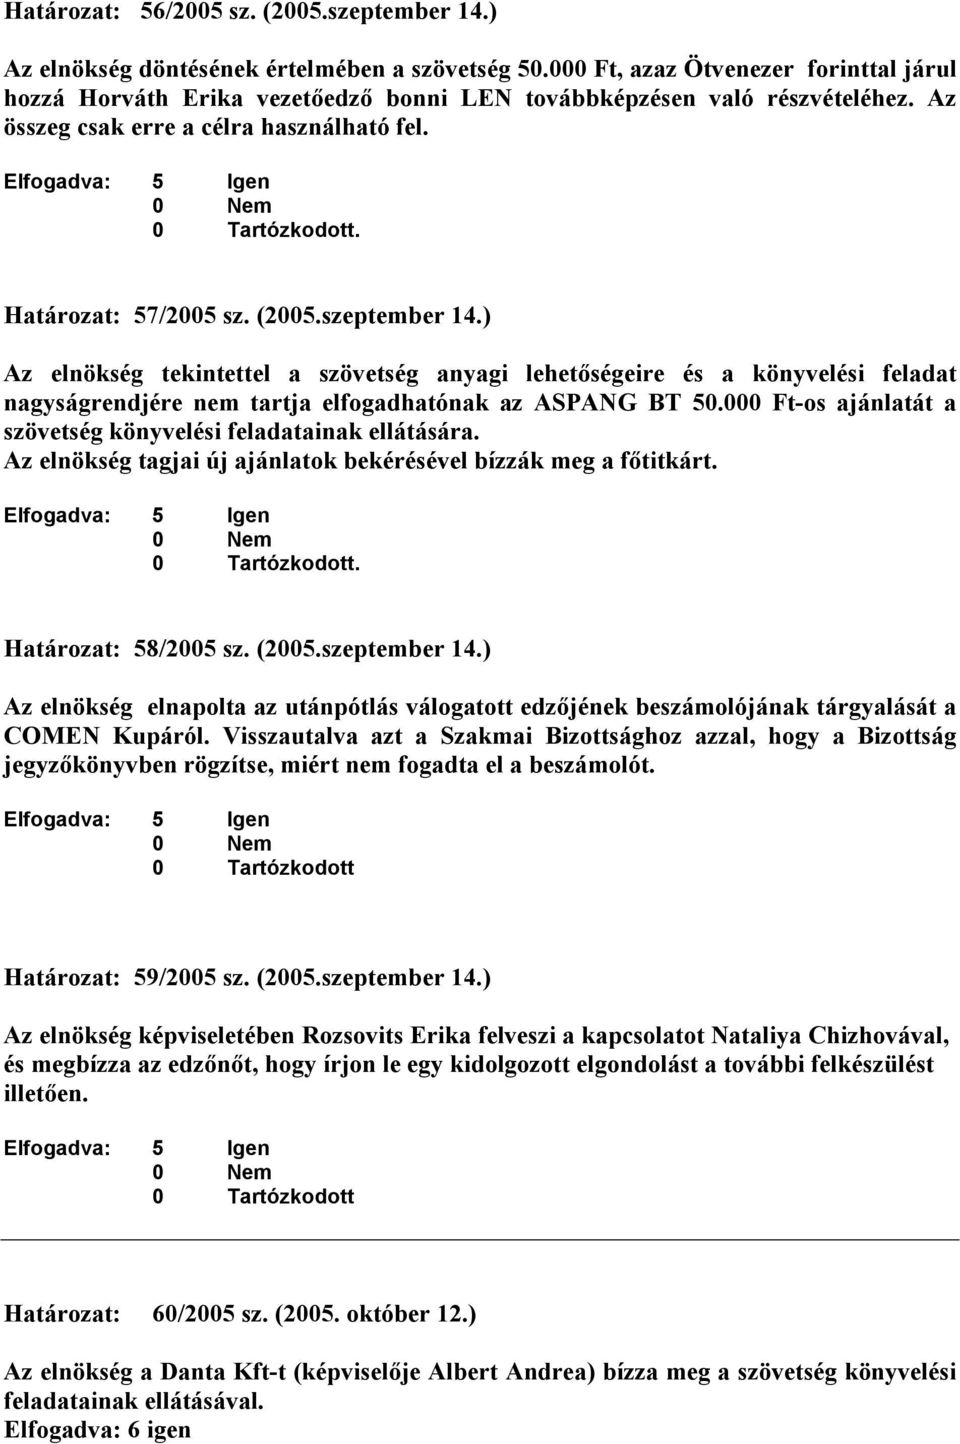 Határozat: 57/2005 sz. (2005.szeptember 14.) Az elnökség tekintettel a szövetség anyagi lehetıségeire és a könyvelési feladat nagyságrendjére nem tartja elfogadhatónak az ASPANG BT 50.